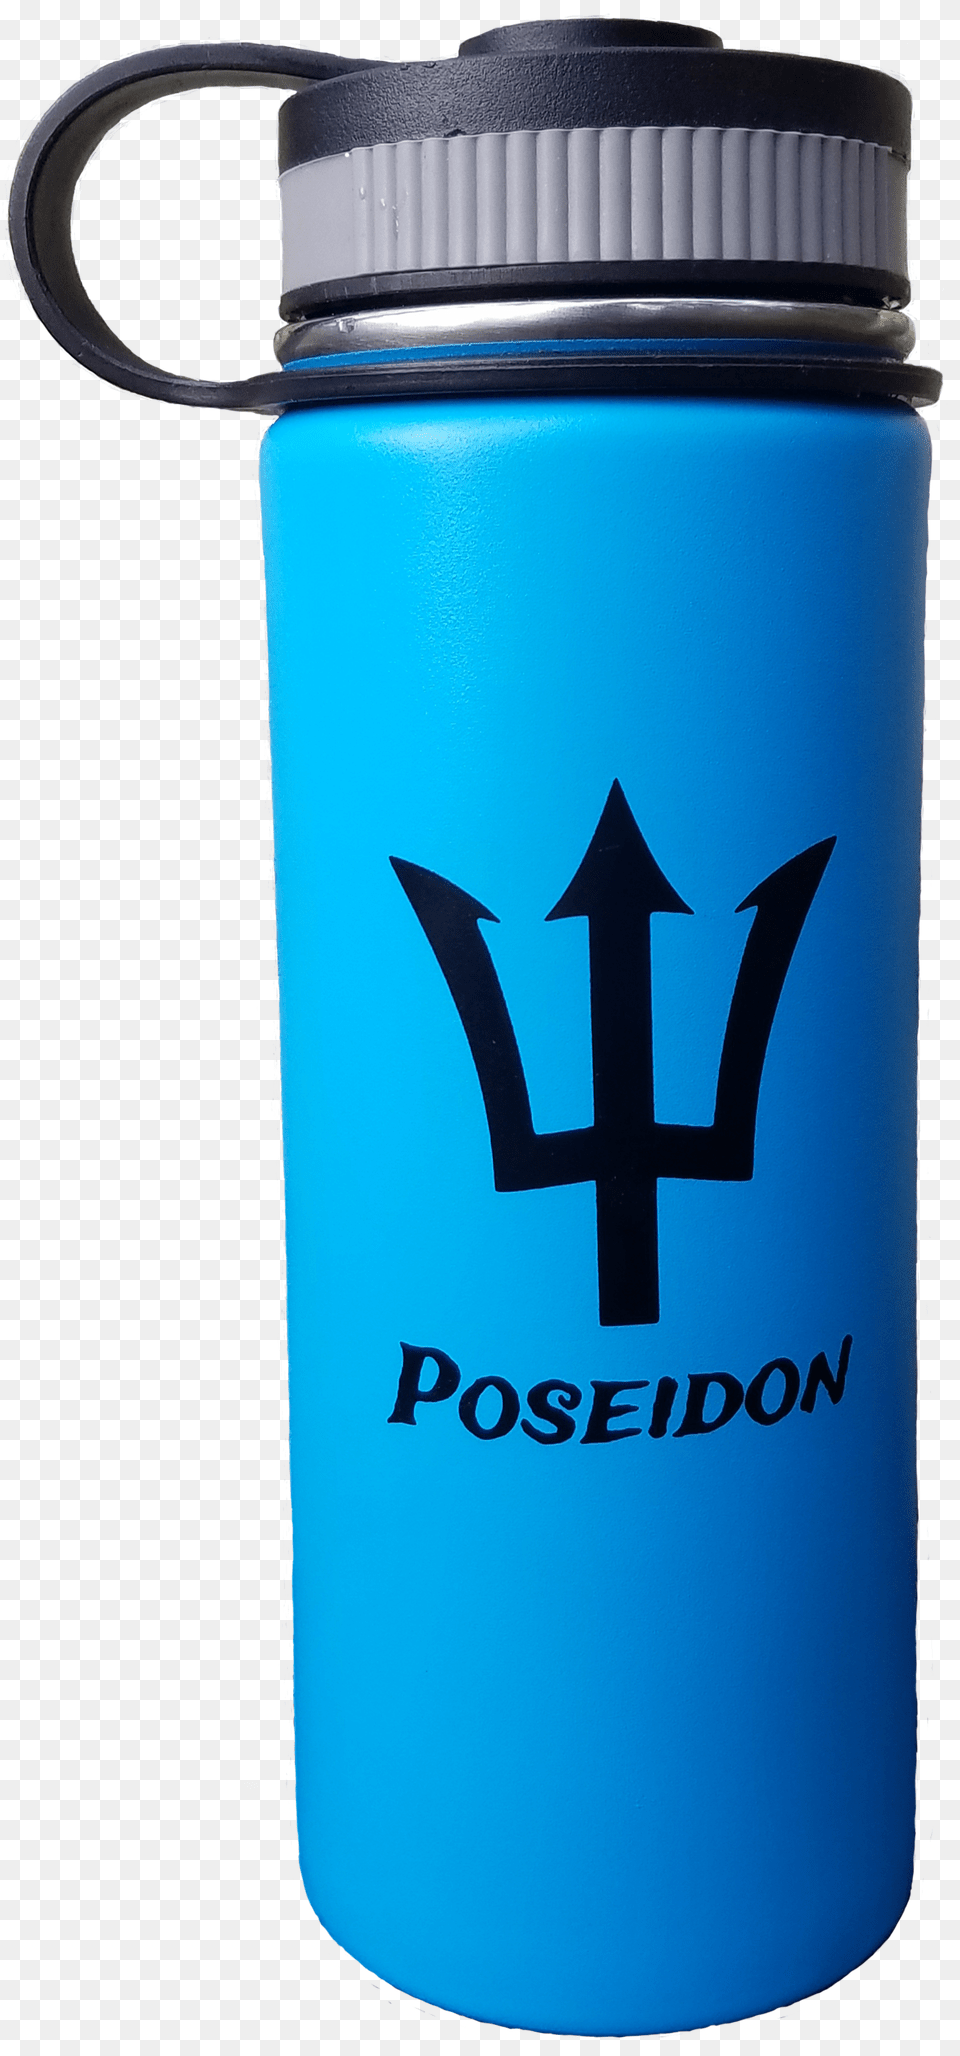 Poseidon Bottle Water Bottle, Water Bottle, Can, Tin Png